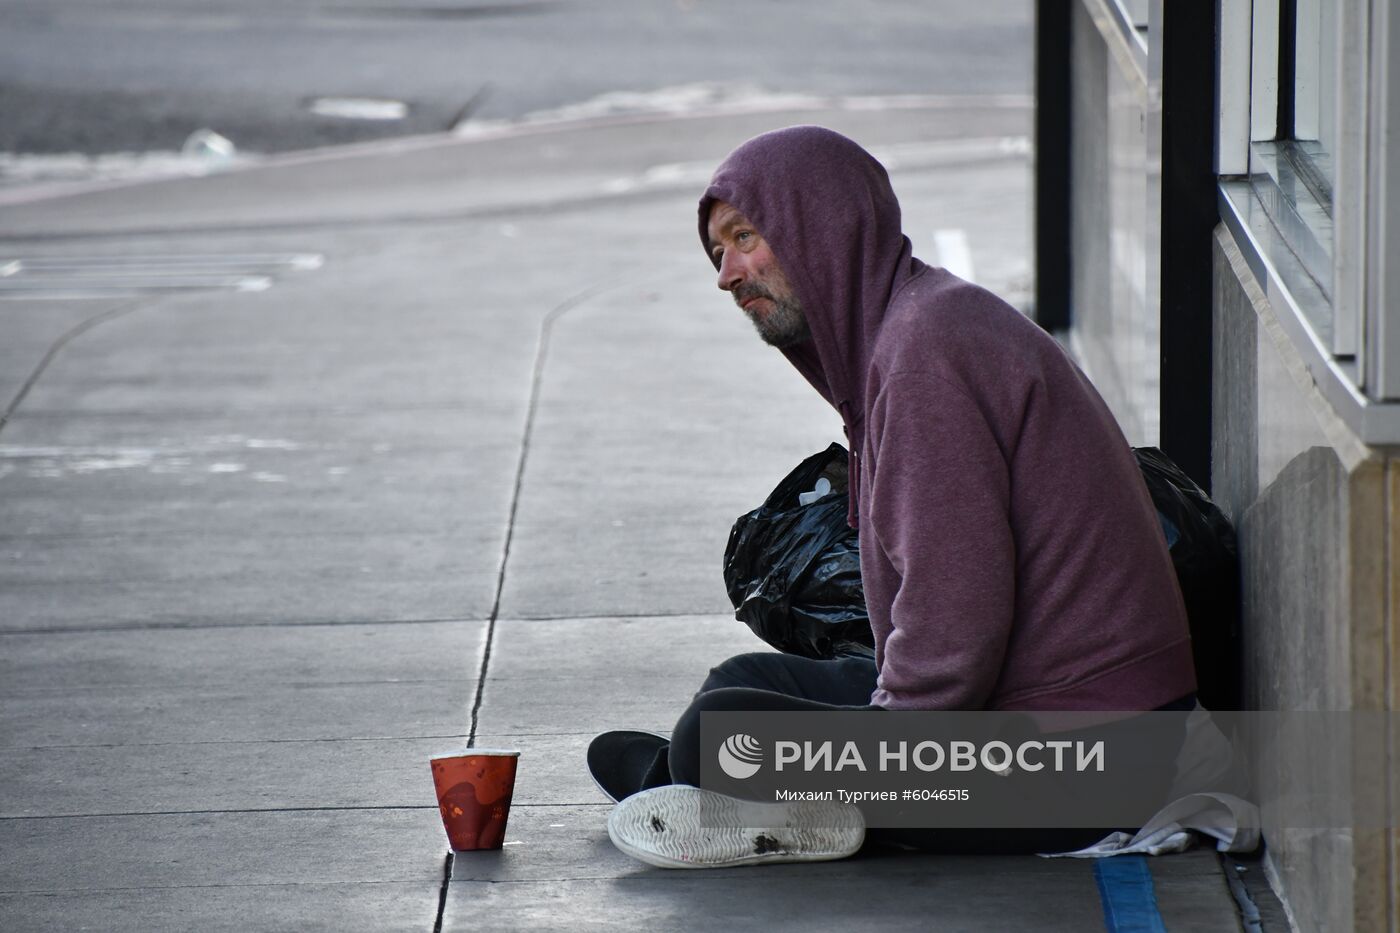 Бездомные в Сан-Франциско